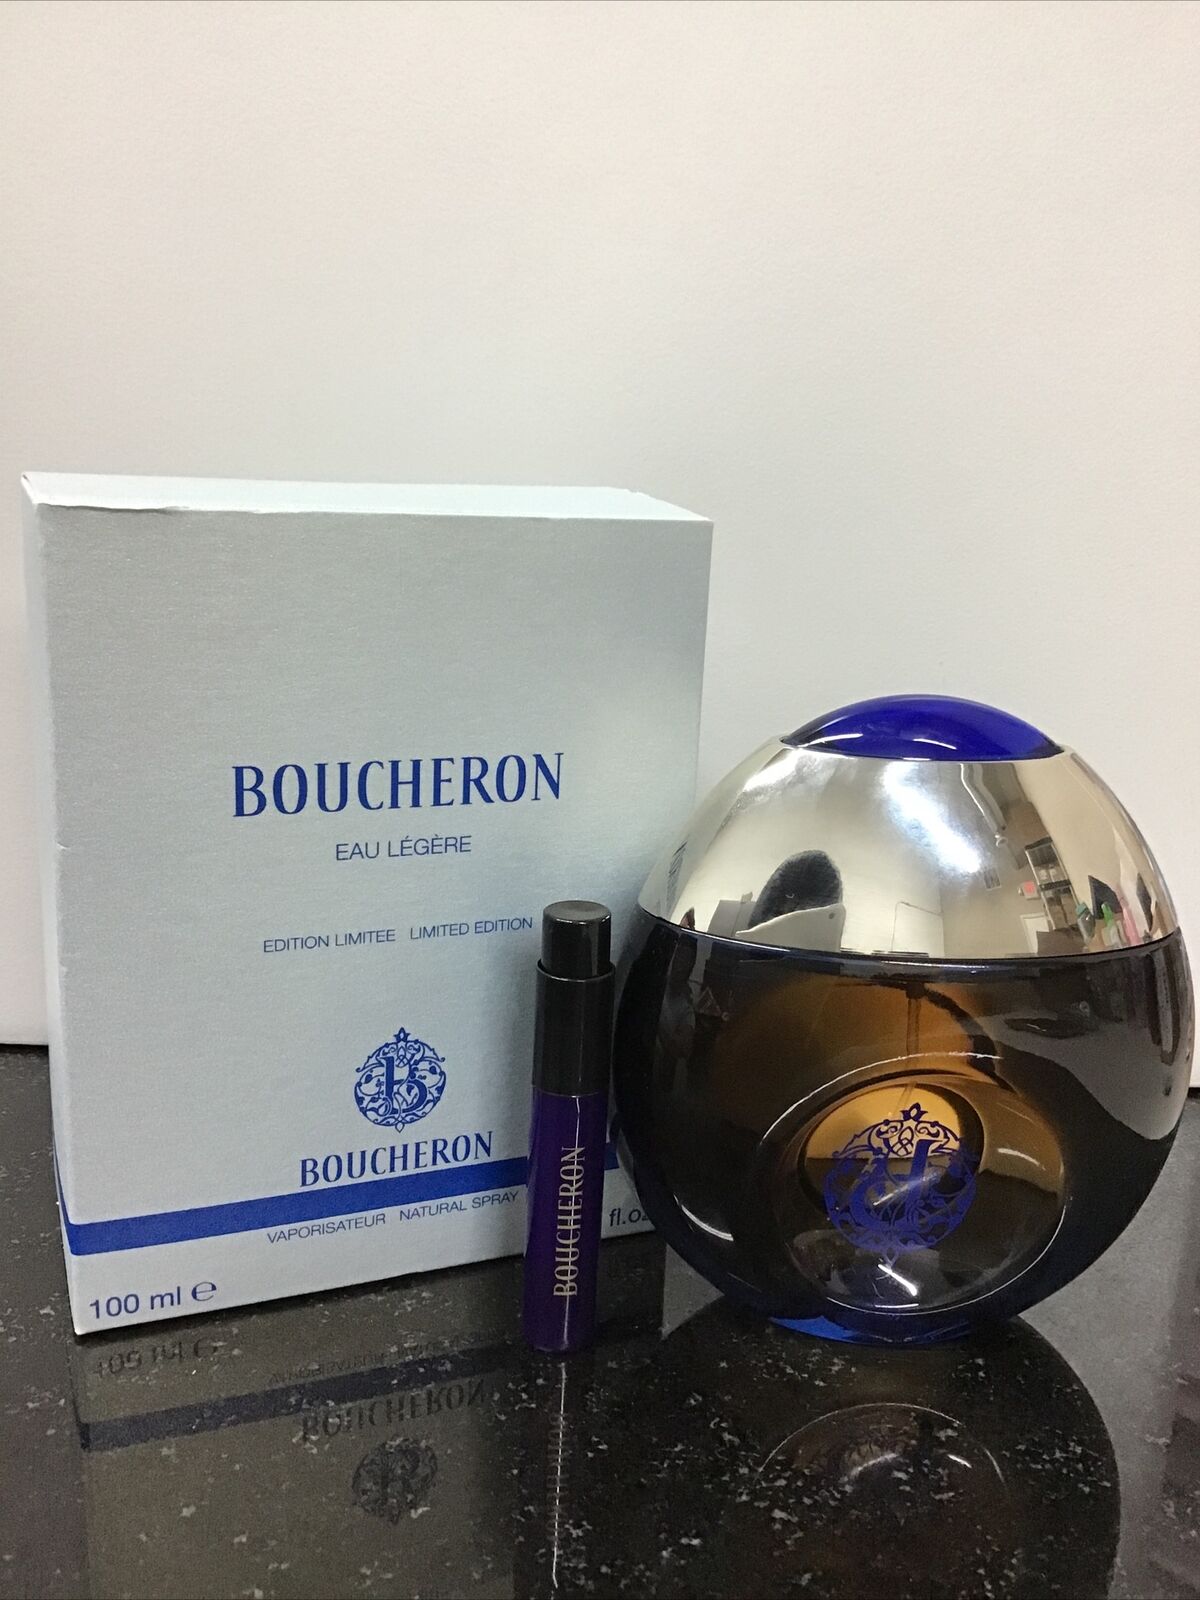 Boucheron Eau Legere limited edition vaporisateur spray 3.3oz As Pictured